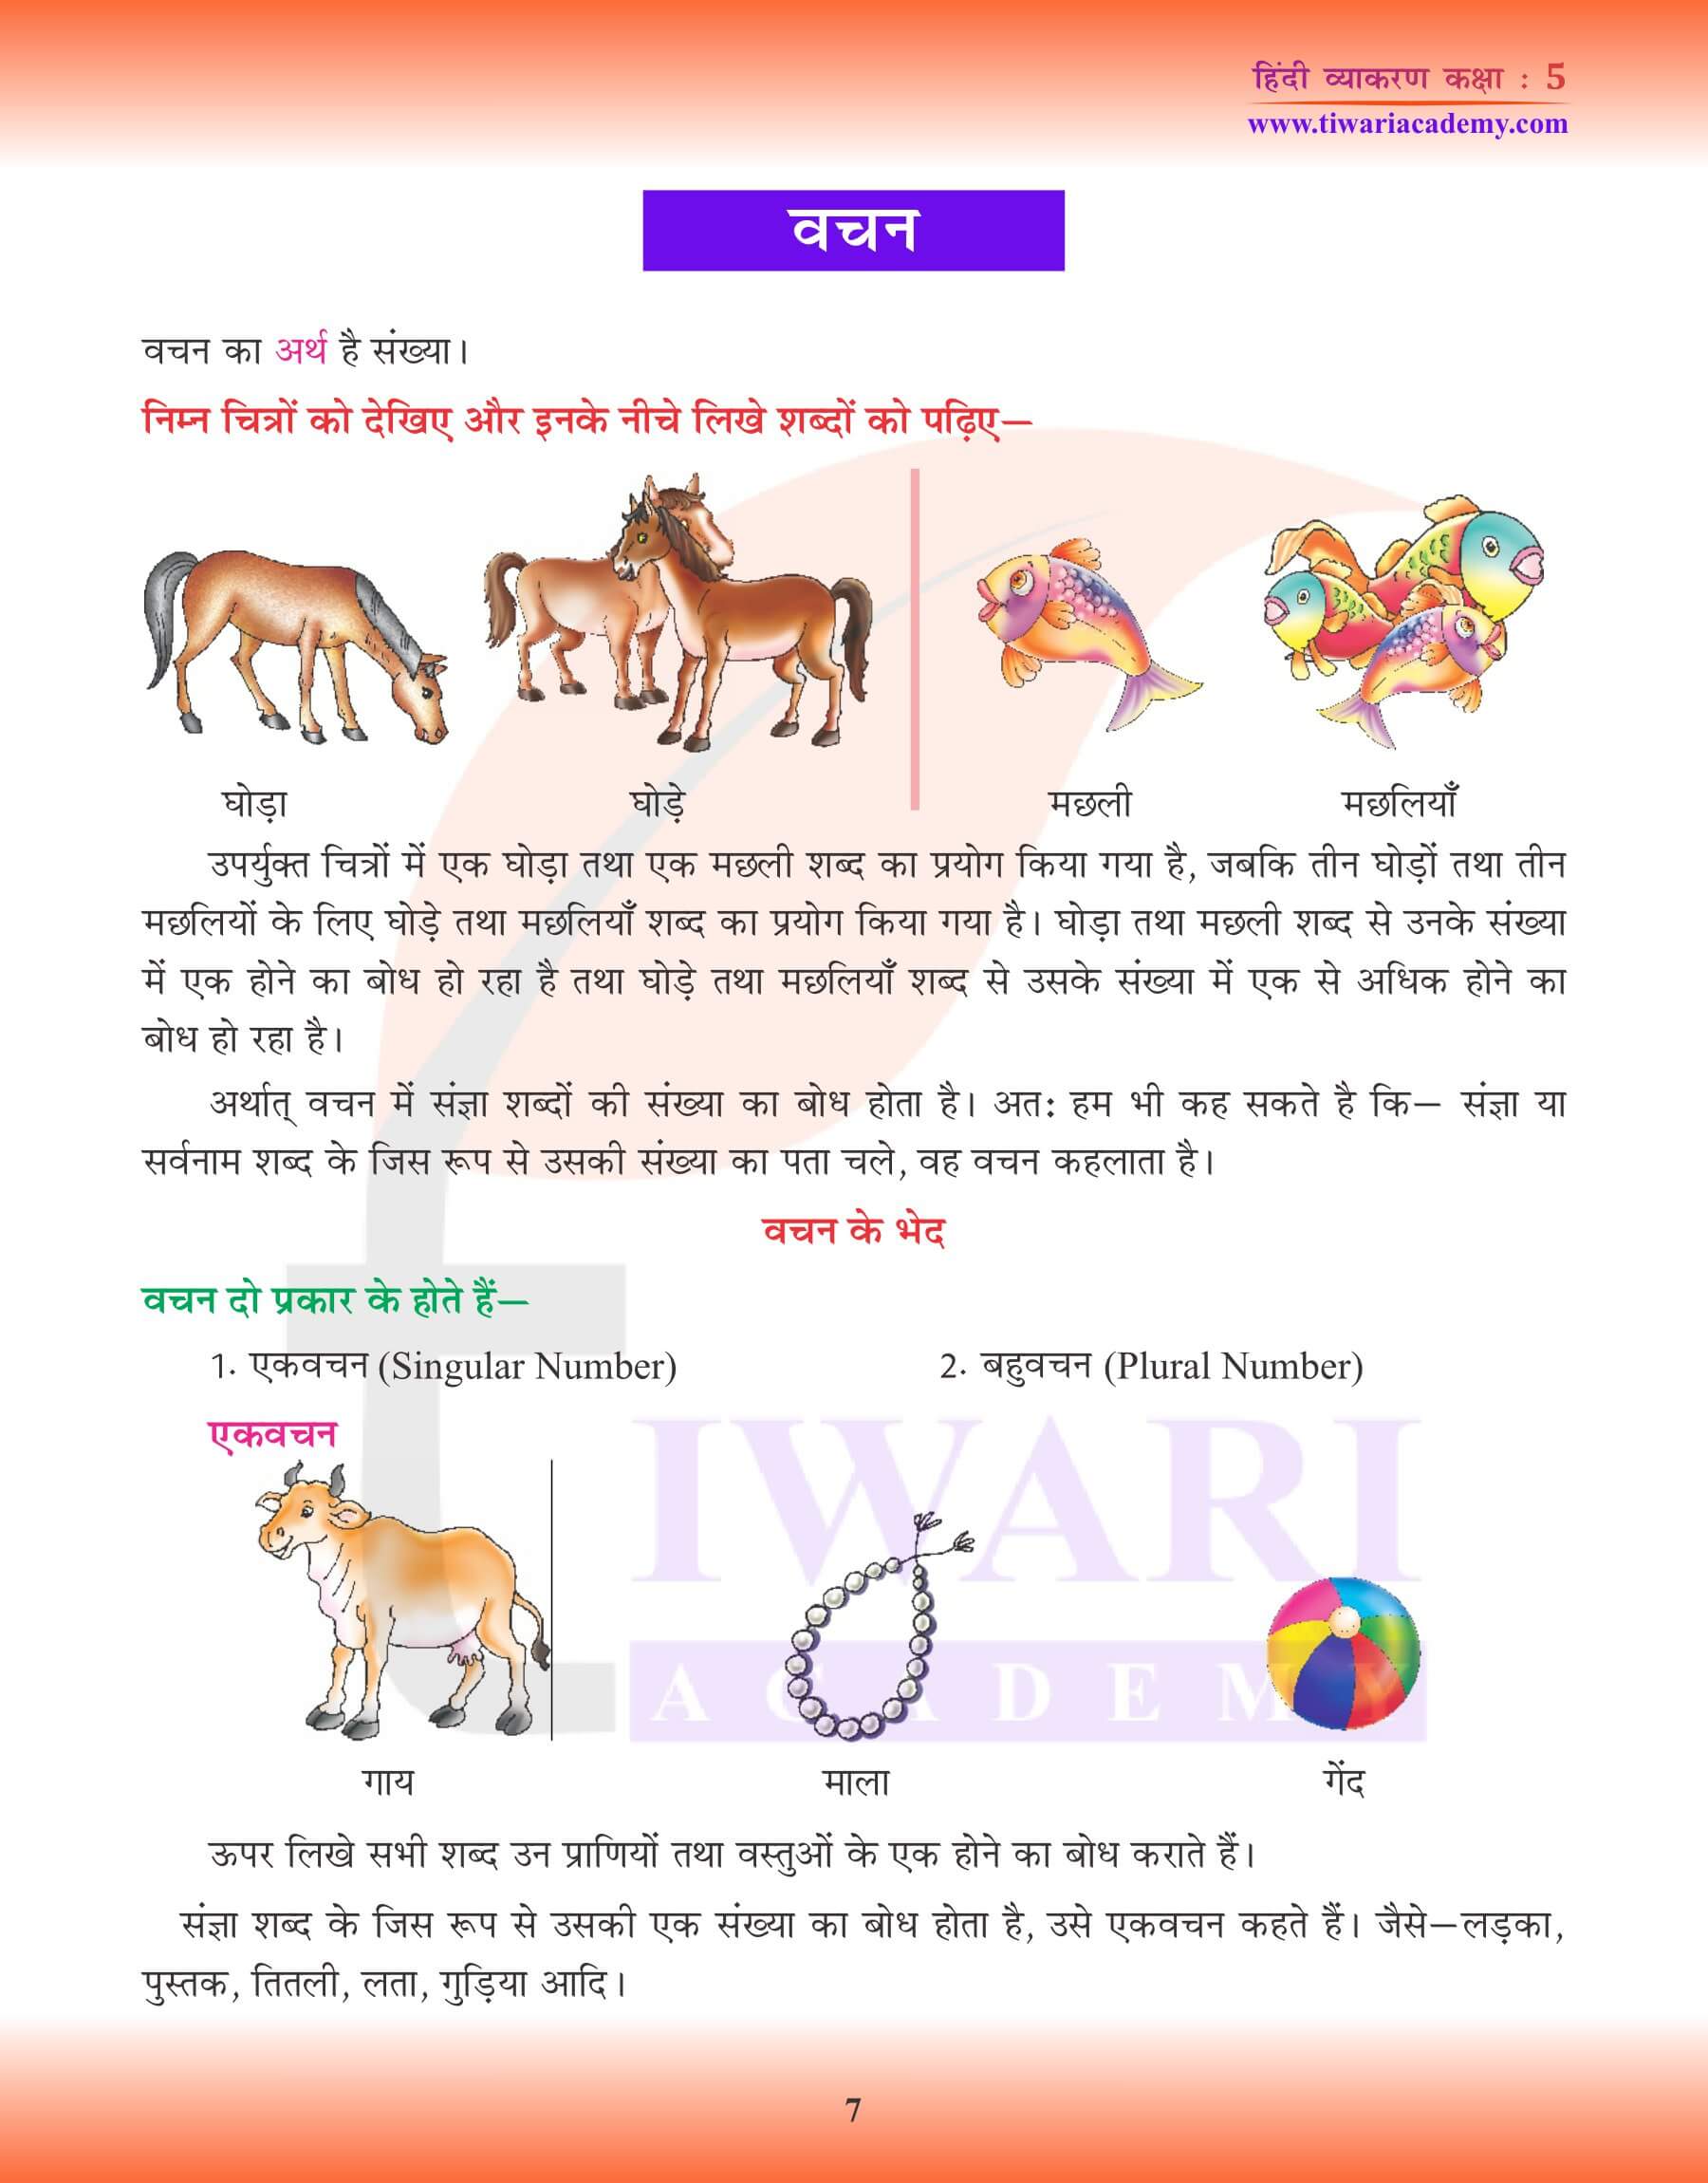 कक्षा 5 हिंदी व्याकरण वचन के उदाहरण